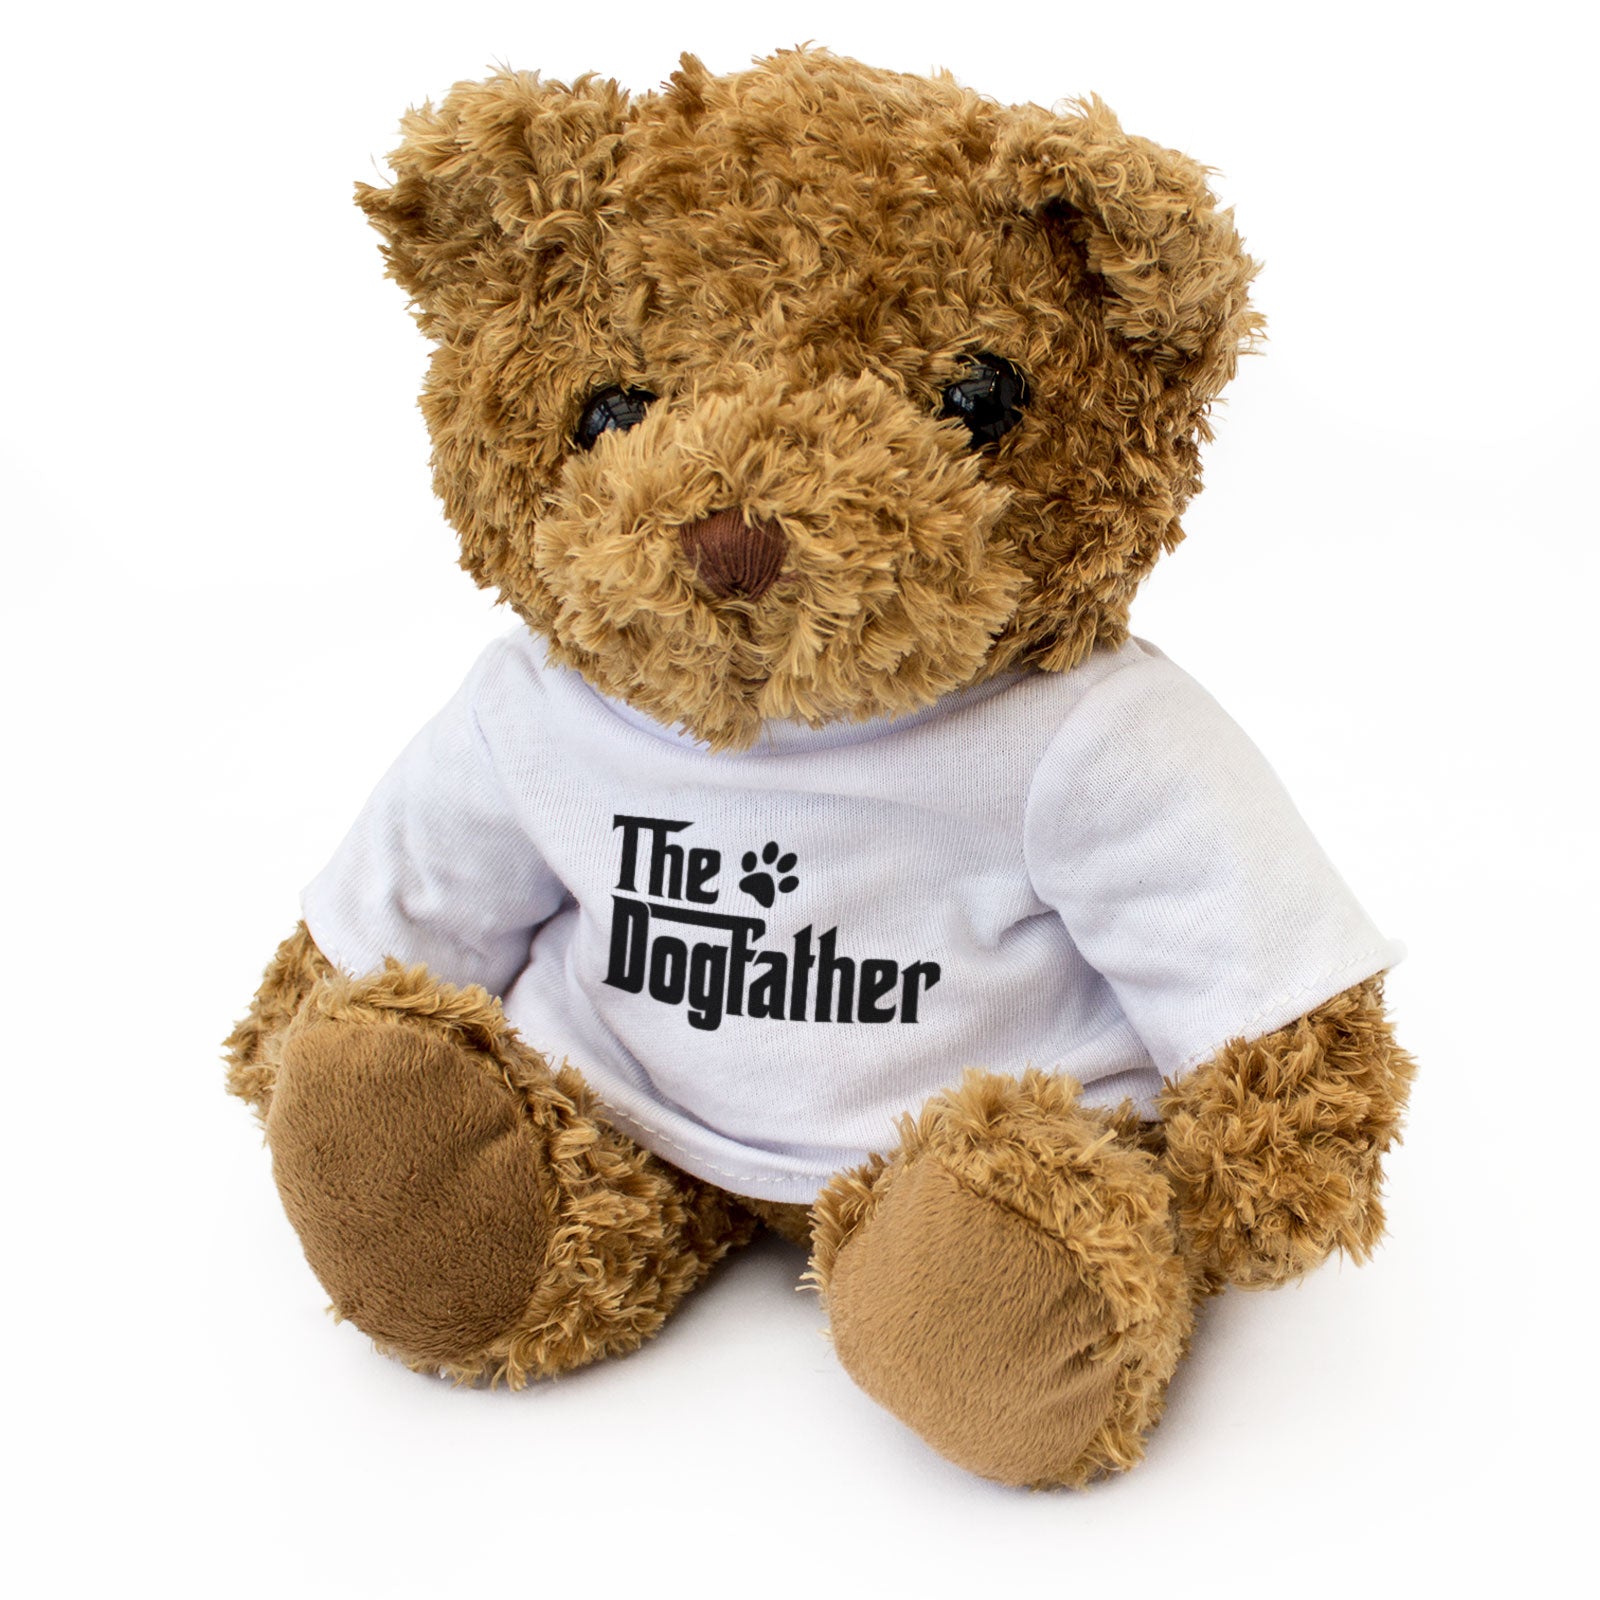 The Dog Father - Teddy Bear